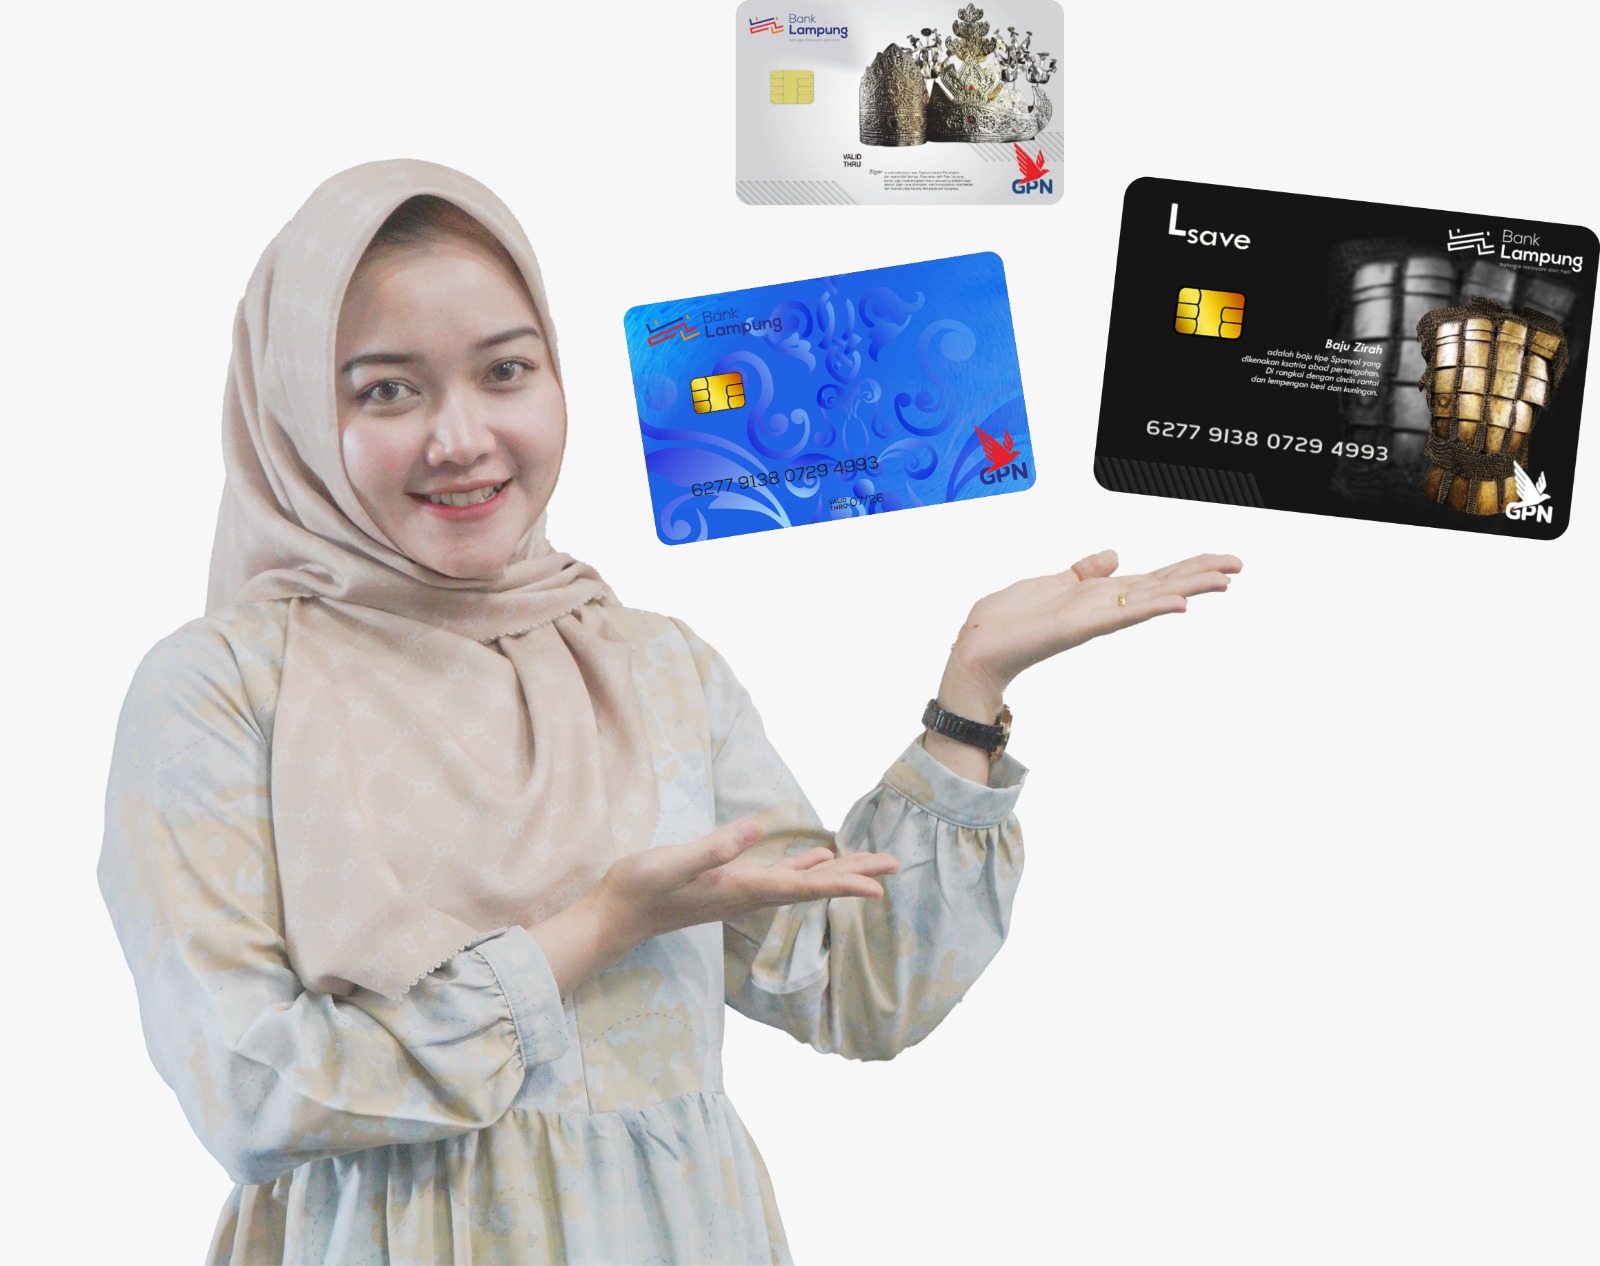 Debit Bank Lampung Solusi Belanja Lebaran Gak Pakai Ribet 